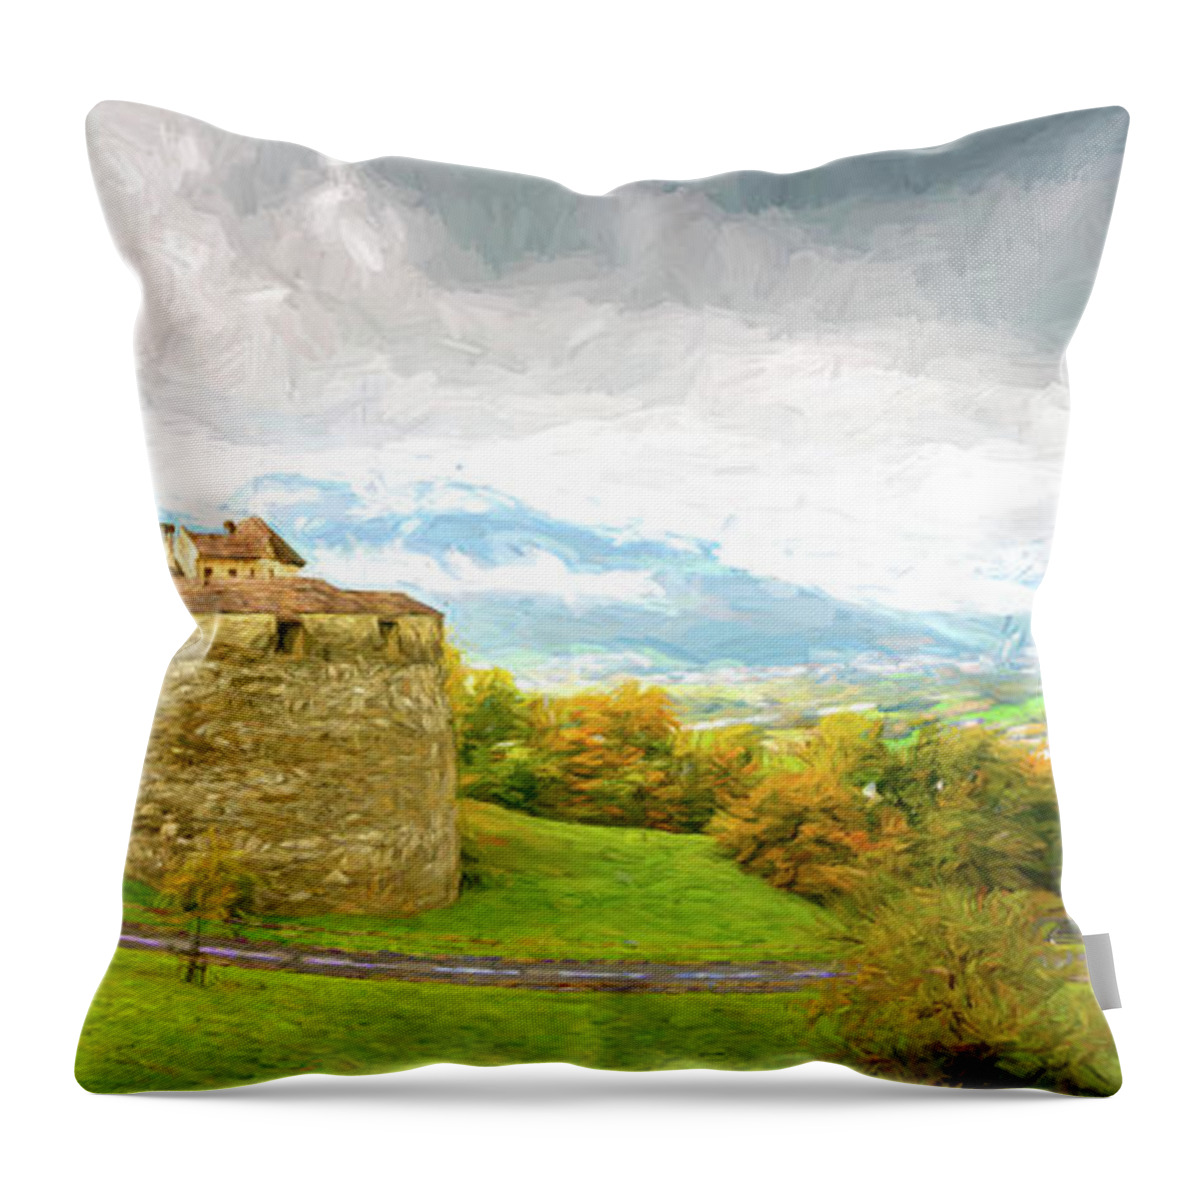 Architecture Throw Pillow featuring the digital art Vaduz Castle, Leichtenstein by Rick Deacon